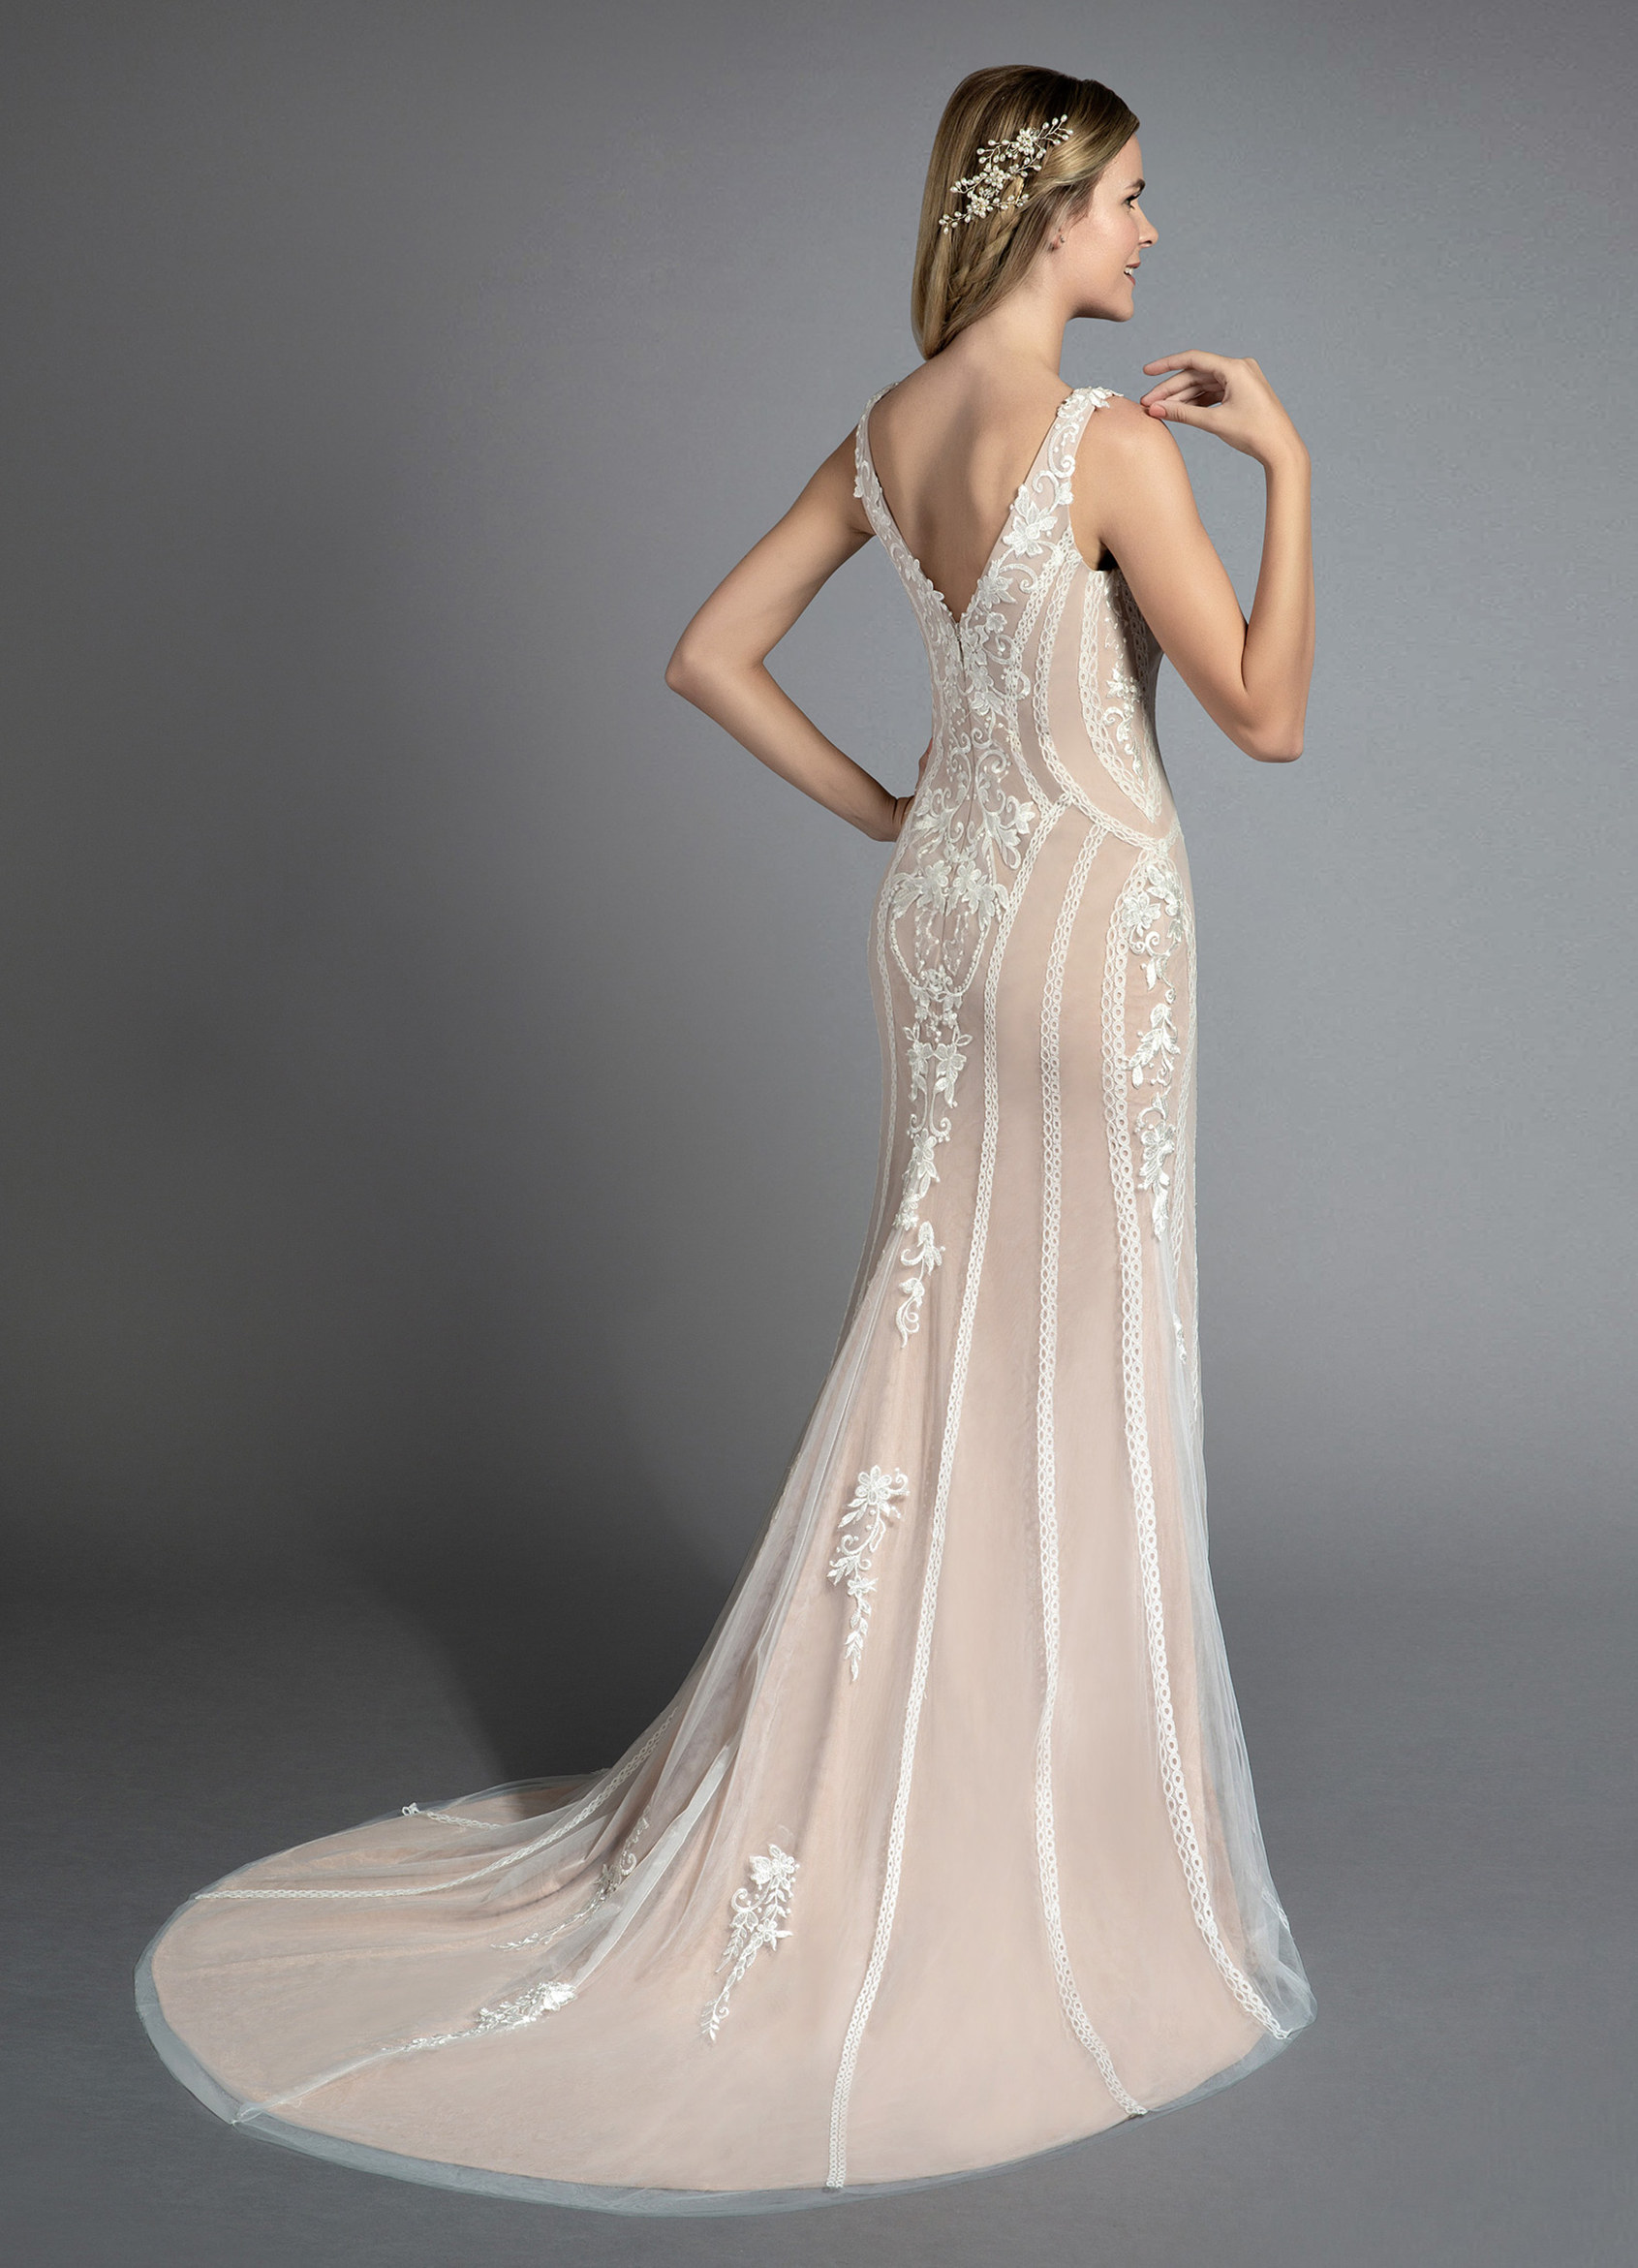 Azazie Ripley BG Wedding Dress - Diamond White/Nude | Azazie